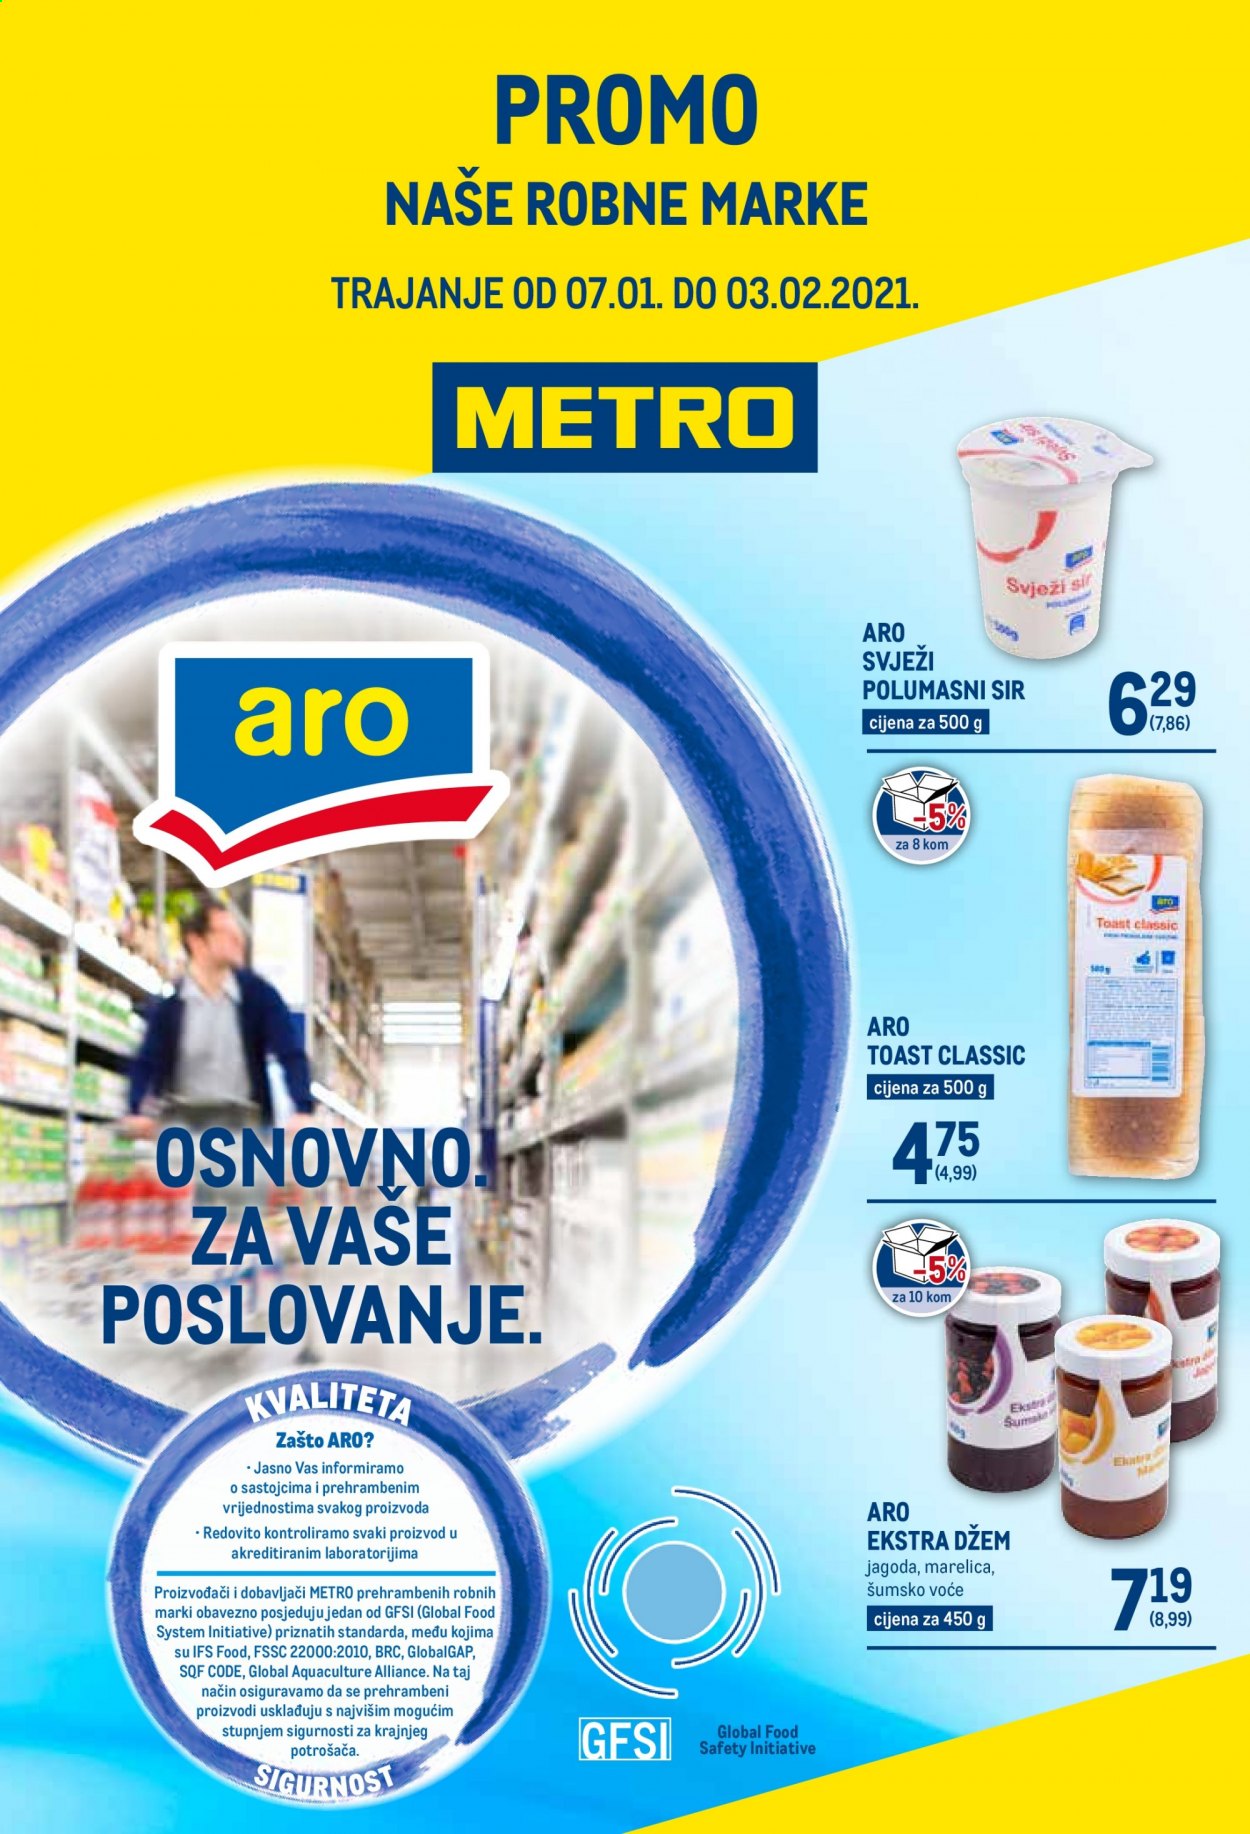 Metro katalog - 07.01.2021. - 03.02.2021.